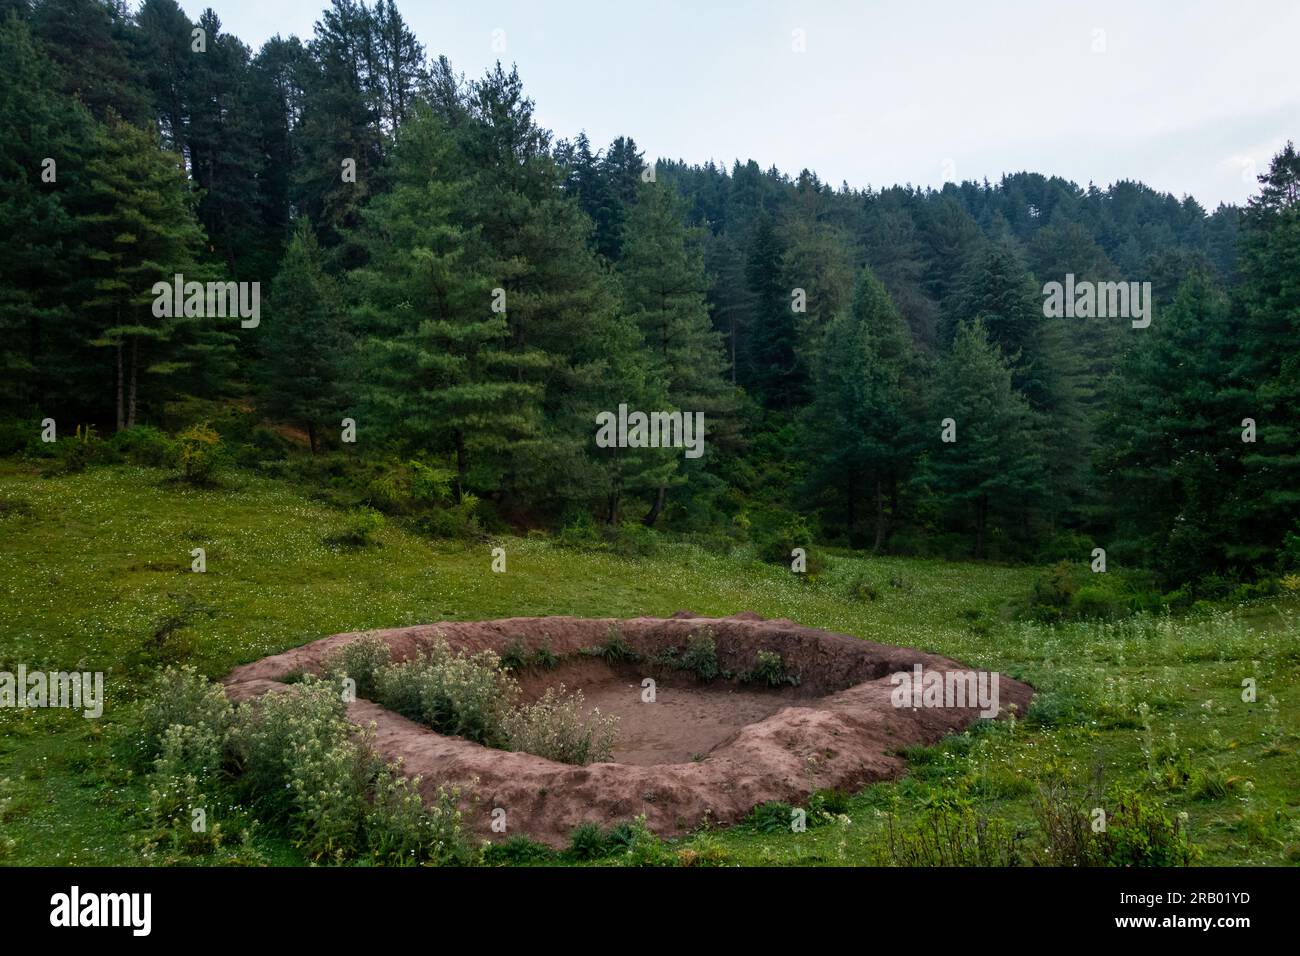 Ein Wassertank mitten in einem Wald, der von der Forstbehörde für wilde Tiere ausgegraben wurde. Uttarakhand Indien. Stockfoto